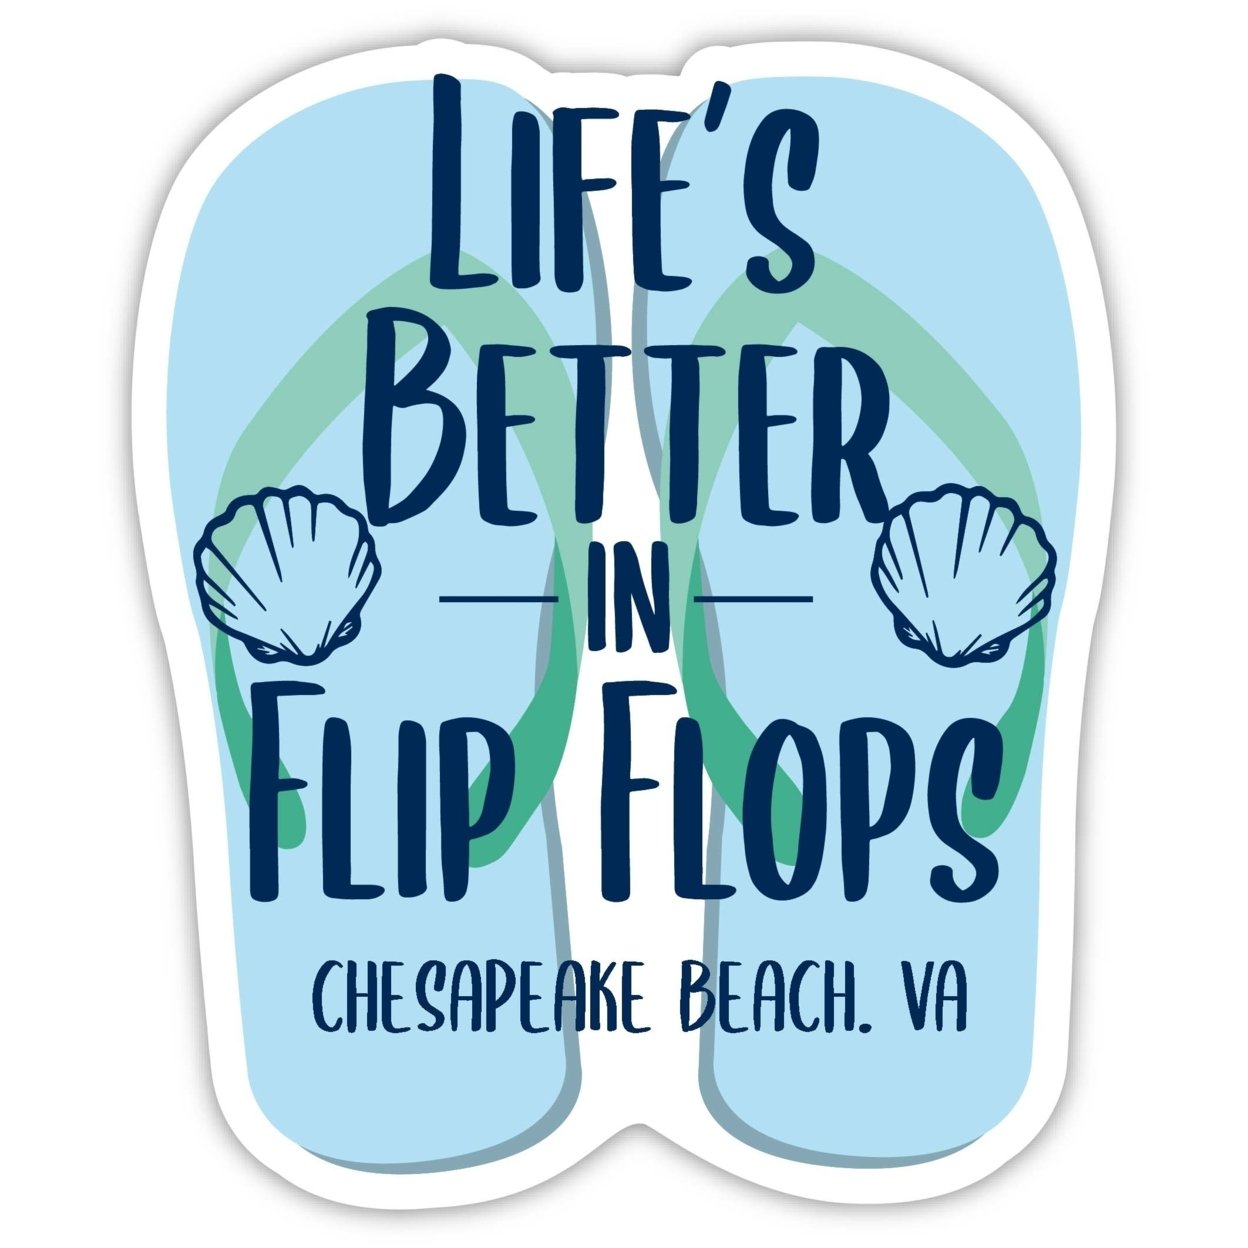 Chesapeake Beach Virginia Souvenir 4 Inch Vinyl Decal Sticker Flip Flop Design